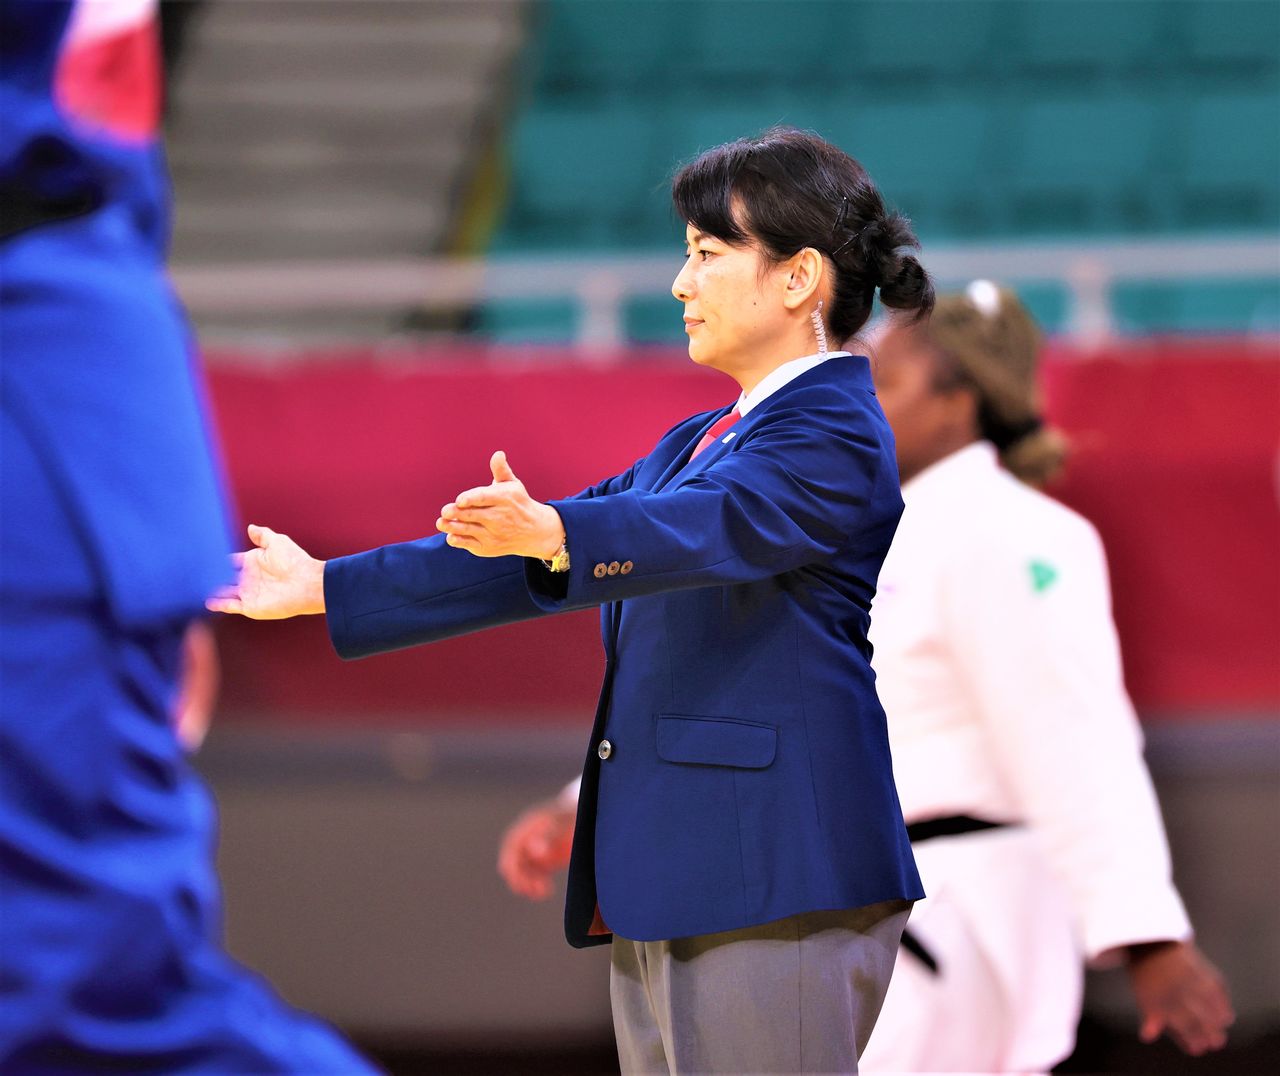 Amano Akiko exerce son activité d’arbitre lors de la compétition de judo des Jeux olympiques d’été 2020 qui s’est déroulée au Budôkan de Tokyo le 30 juillet 2021. Outre qu’elle est septième dan, elle est aussi directrice à la quinzième génération du fabricant de feux d’artifice Kagiya. (Jiji)